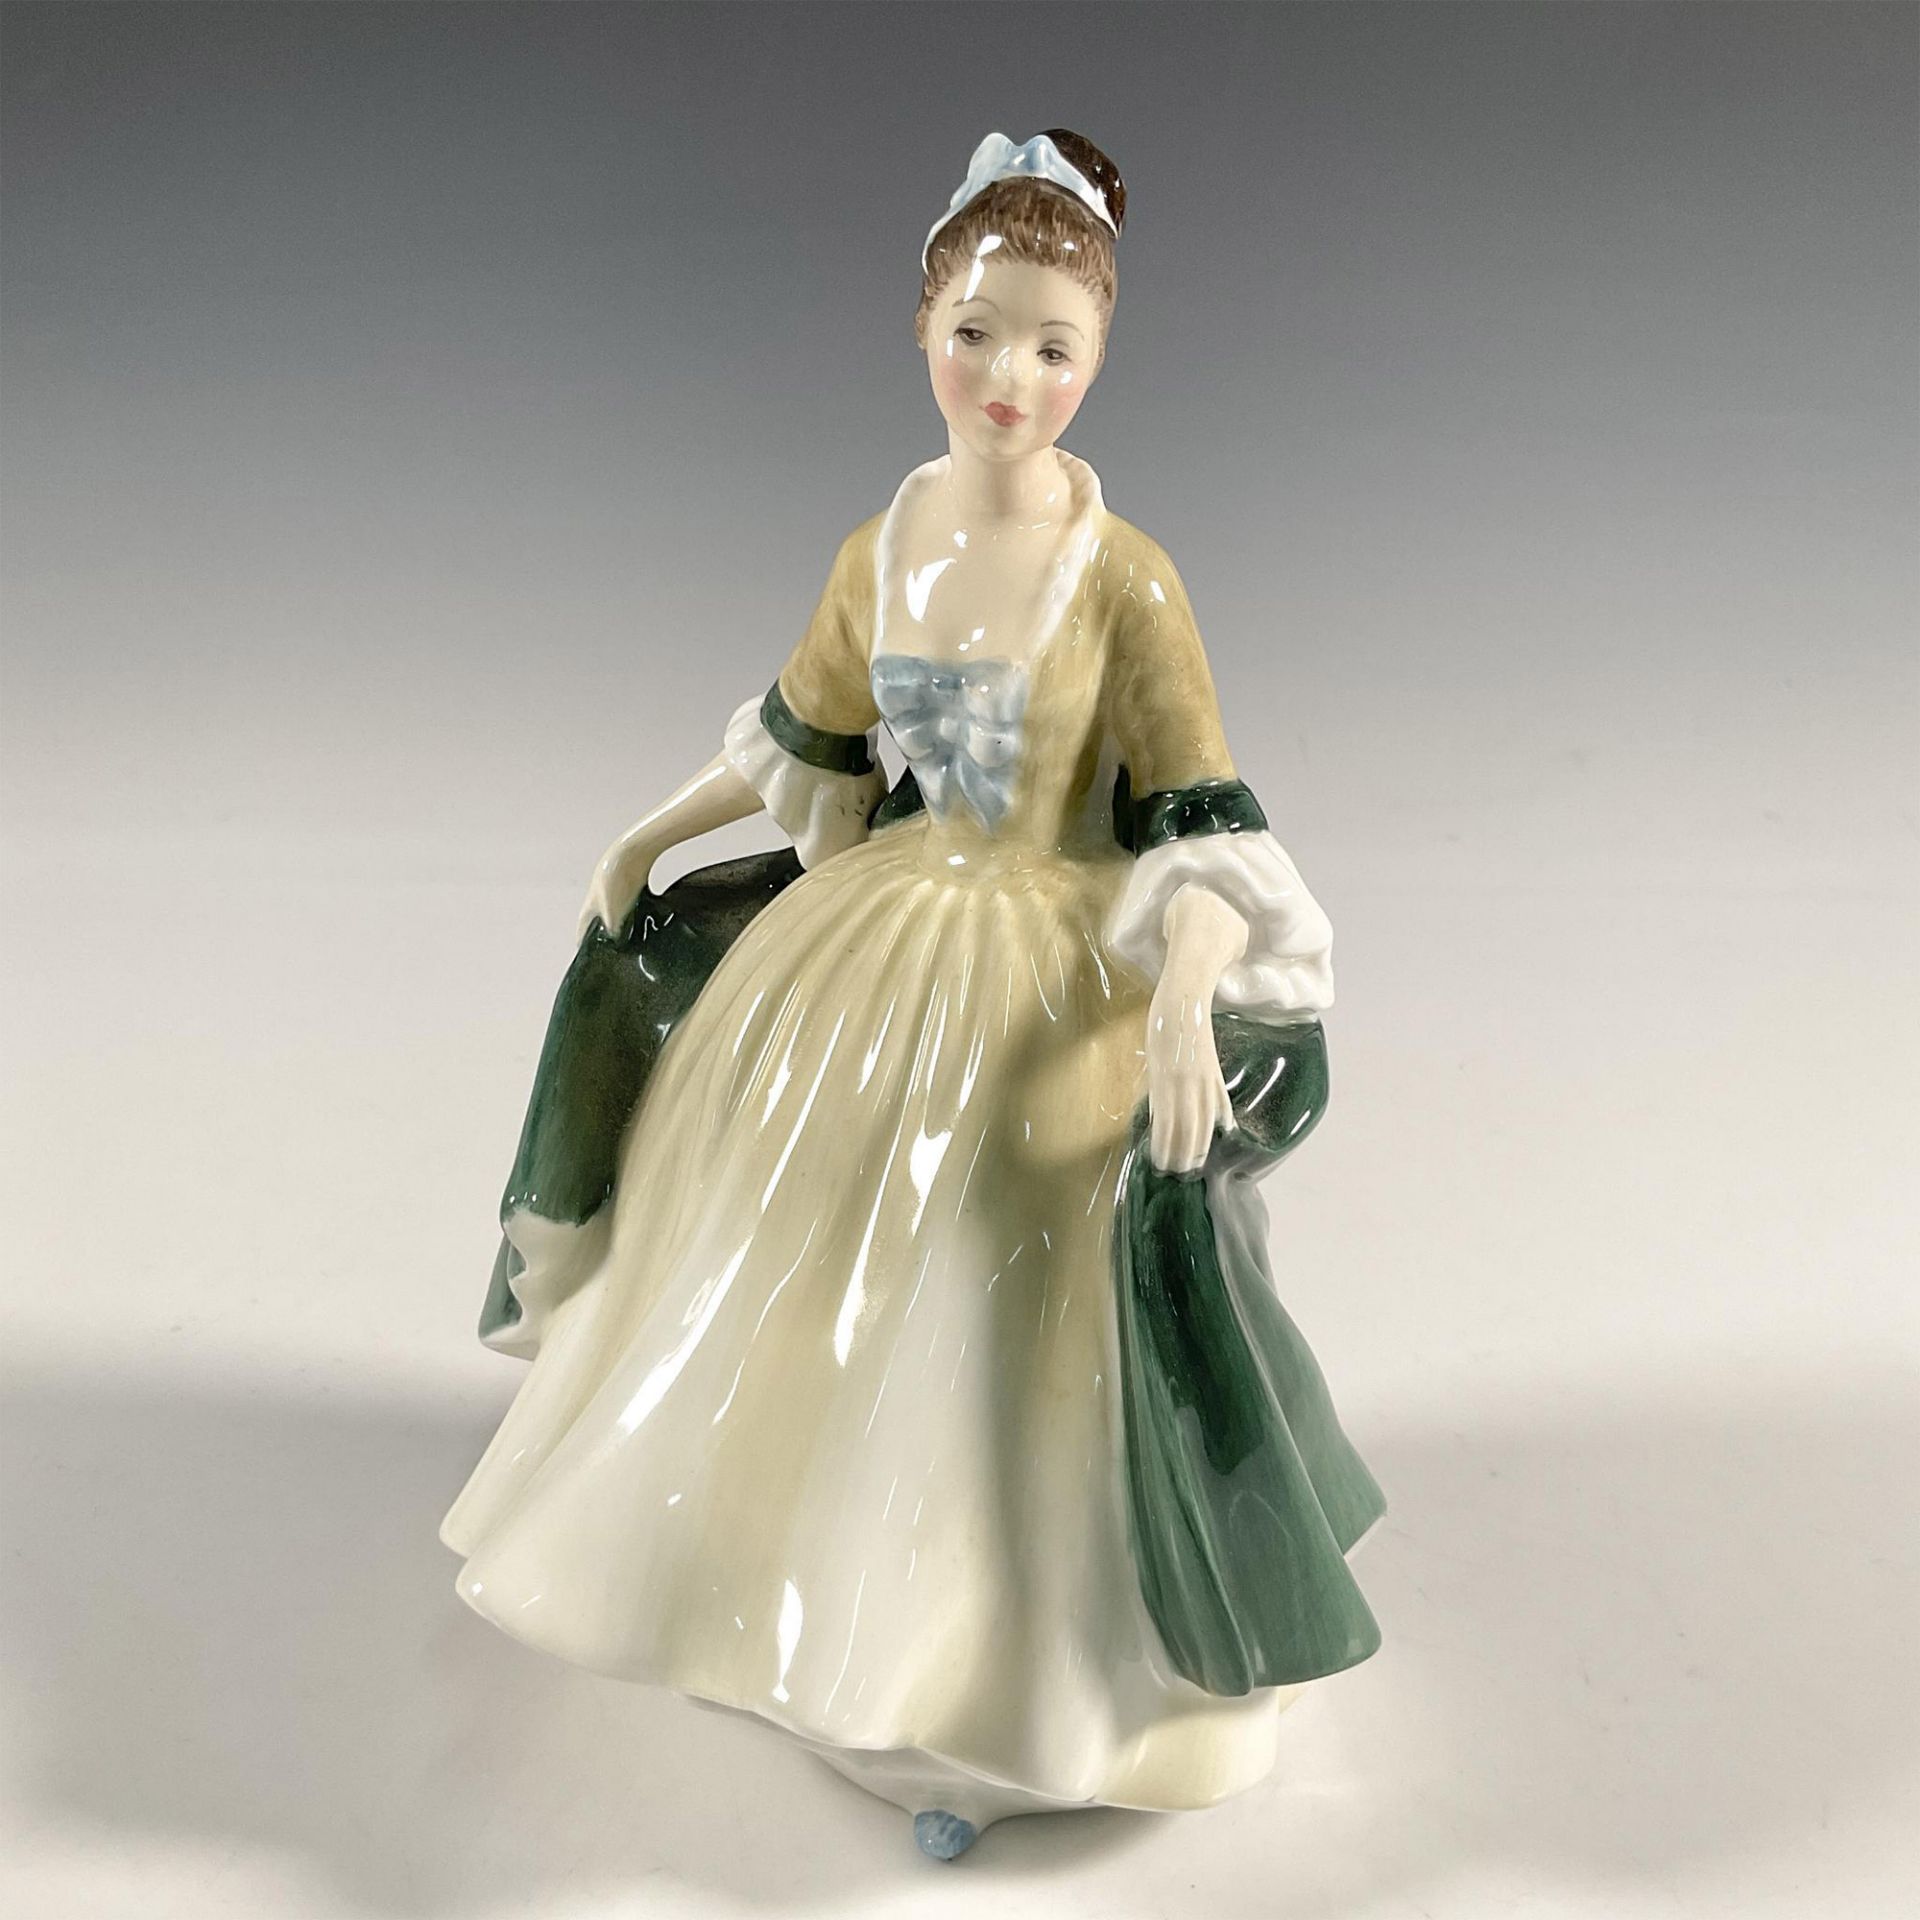 Elegance - HN2264 - Royal Doulton Figurine - Image 2 of 4